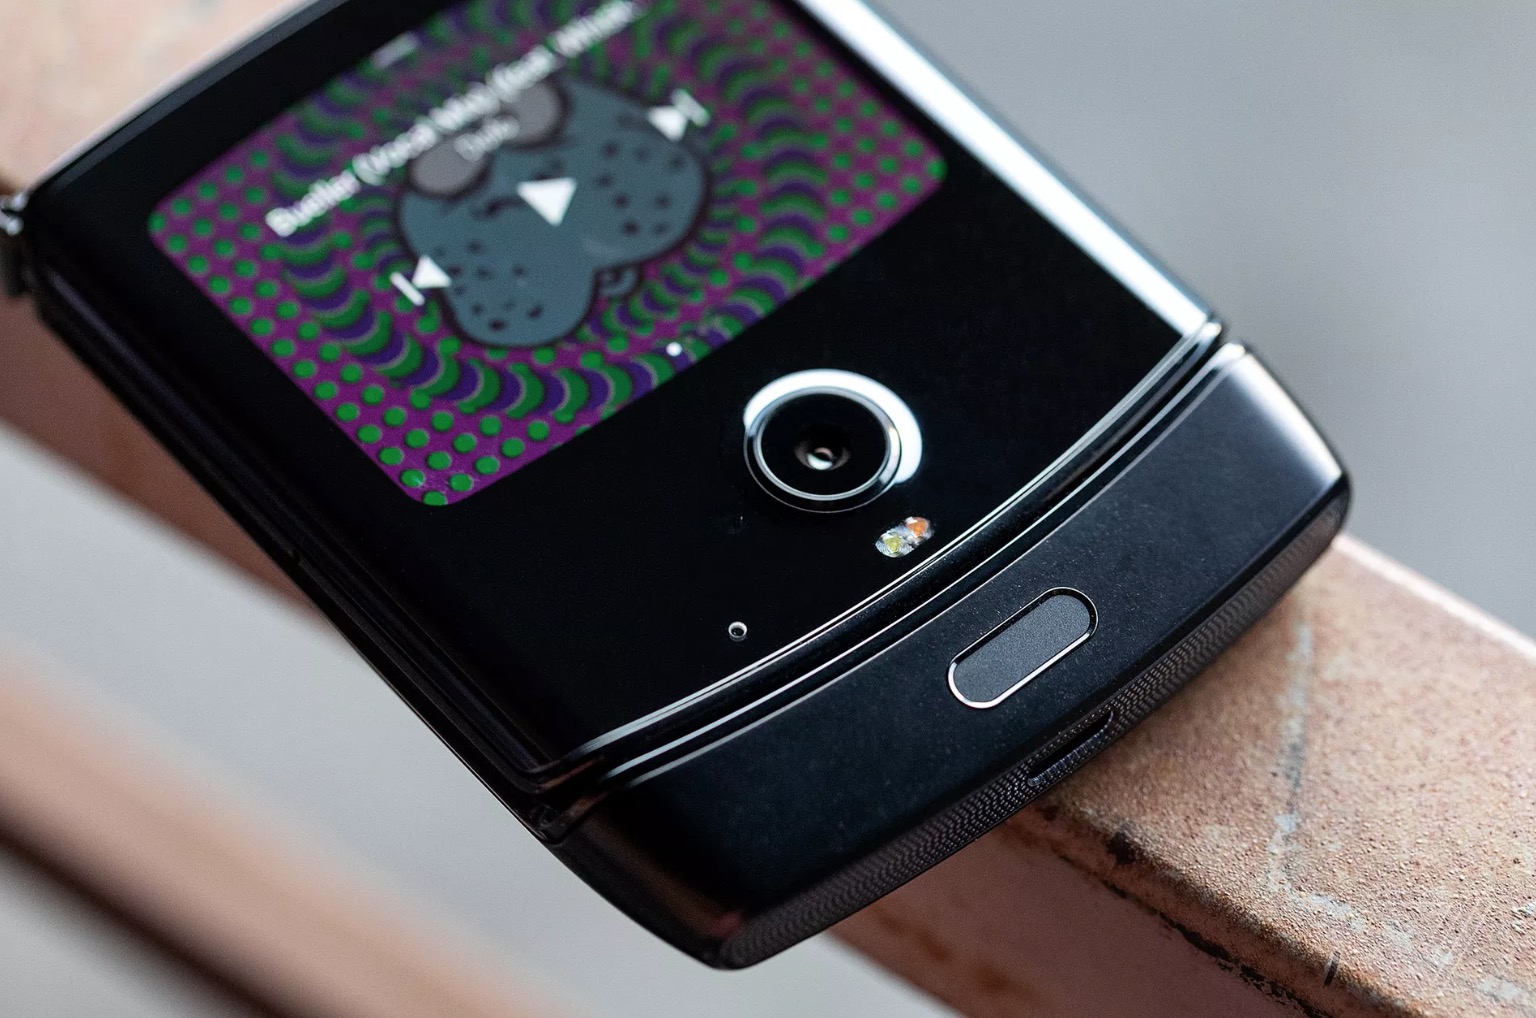 Motorola RAZR chính
thức được hồi sinh: Điện thoại mà hình gập kiểu vỏ sò, giá
1500USD